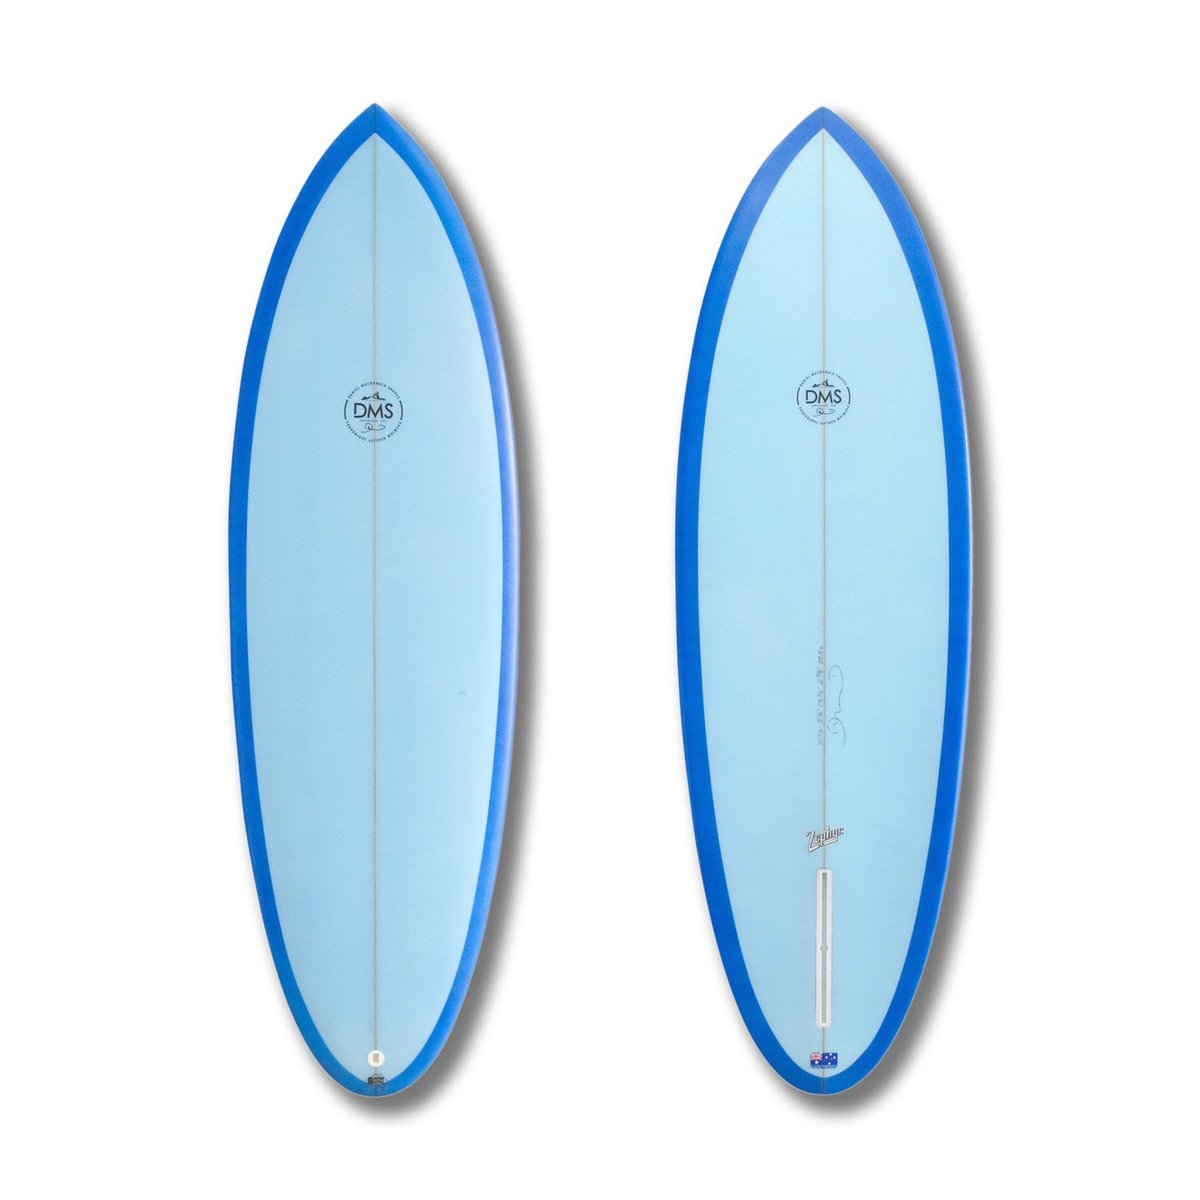 Zephyr | DMS サーフボード 日本公式サイト( DMS Surfboards Japan 